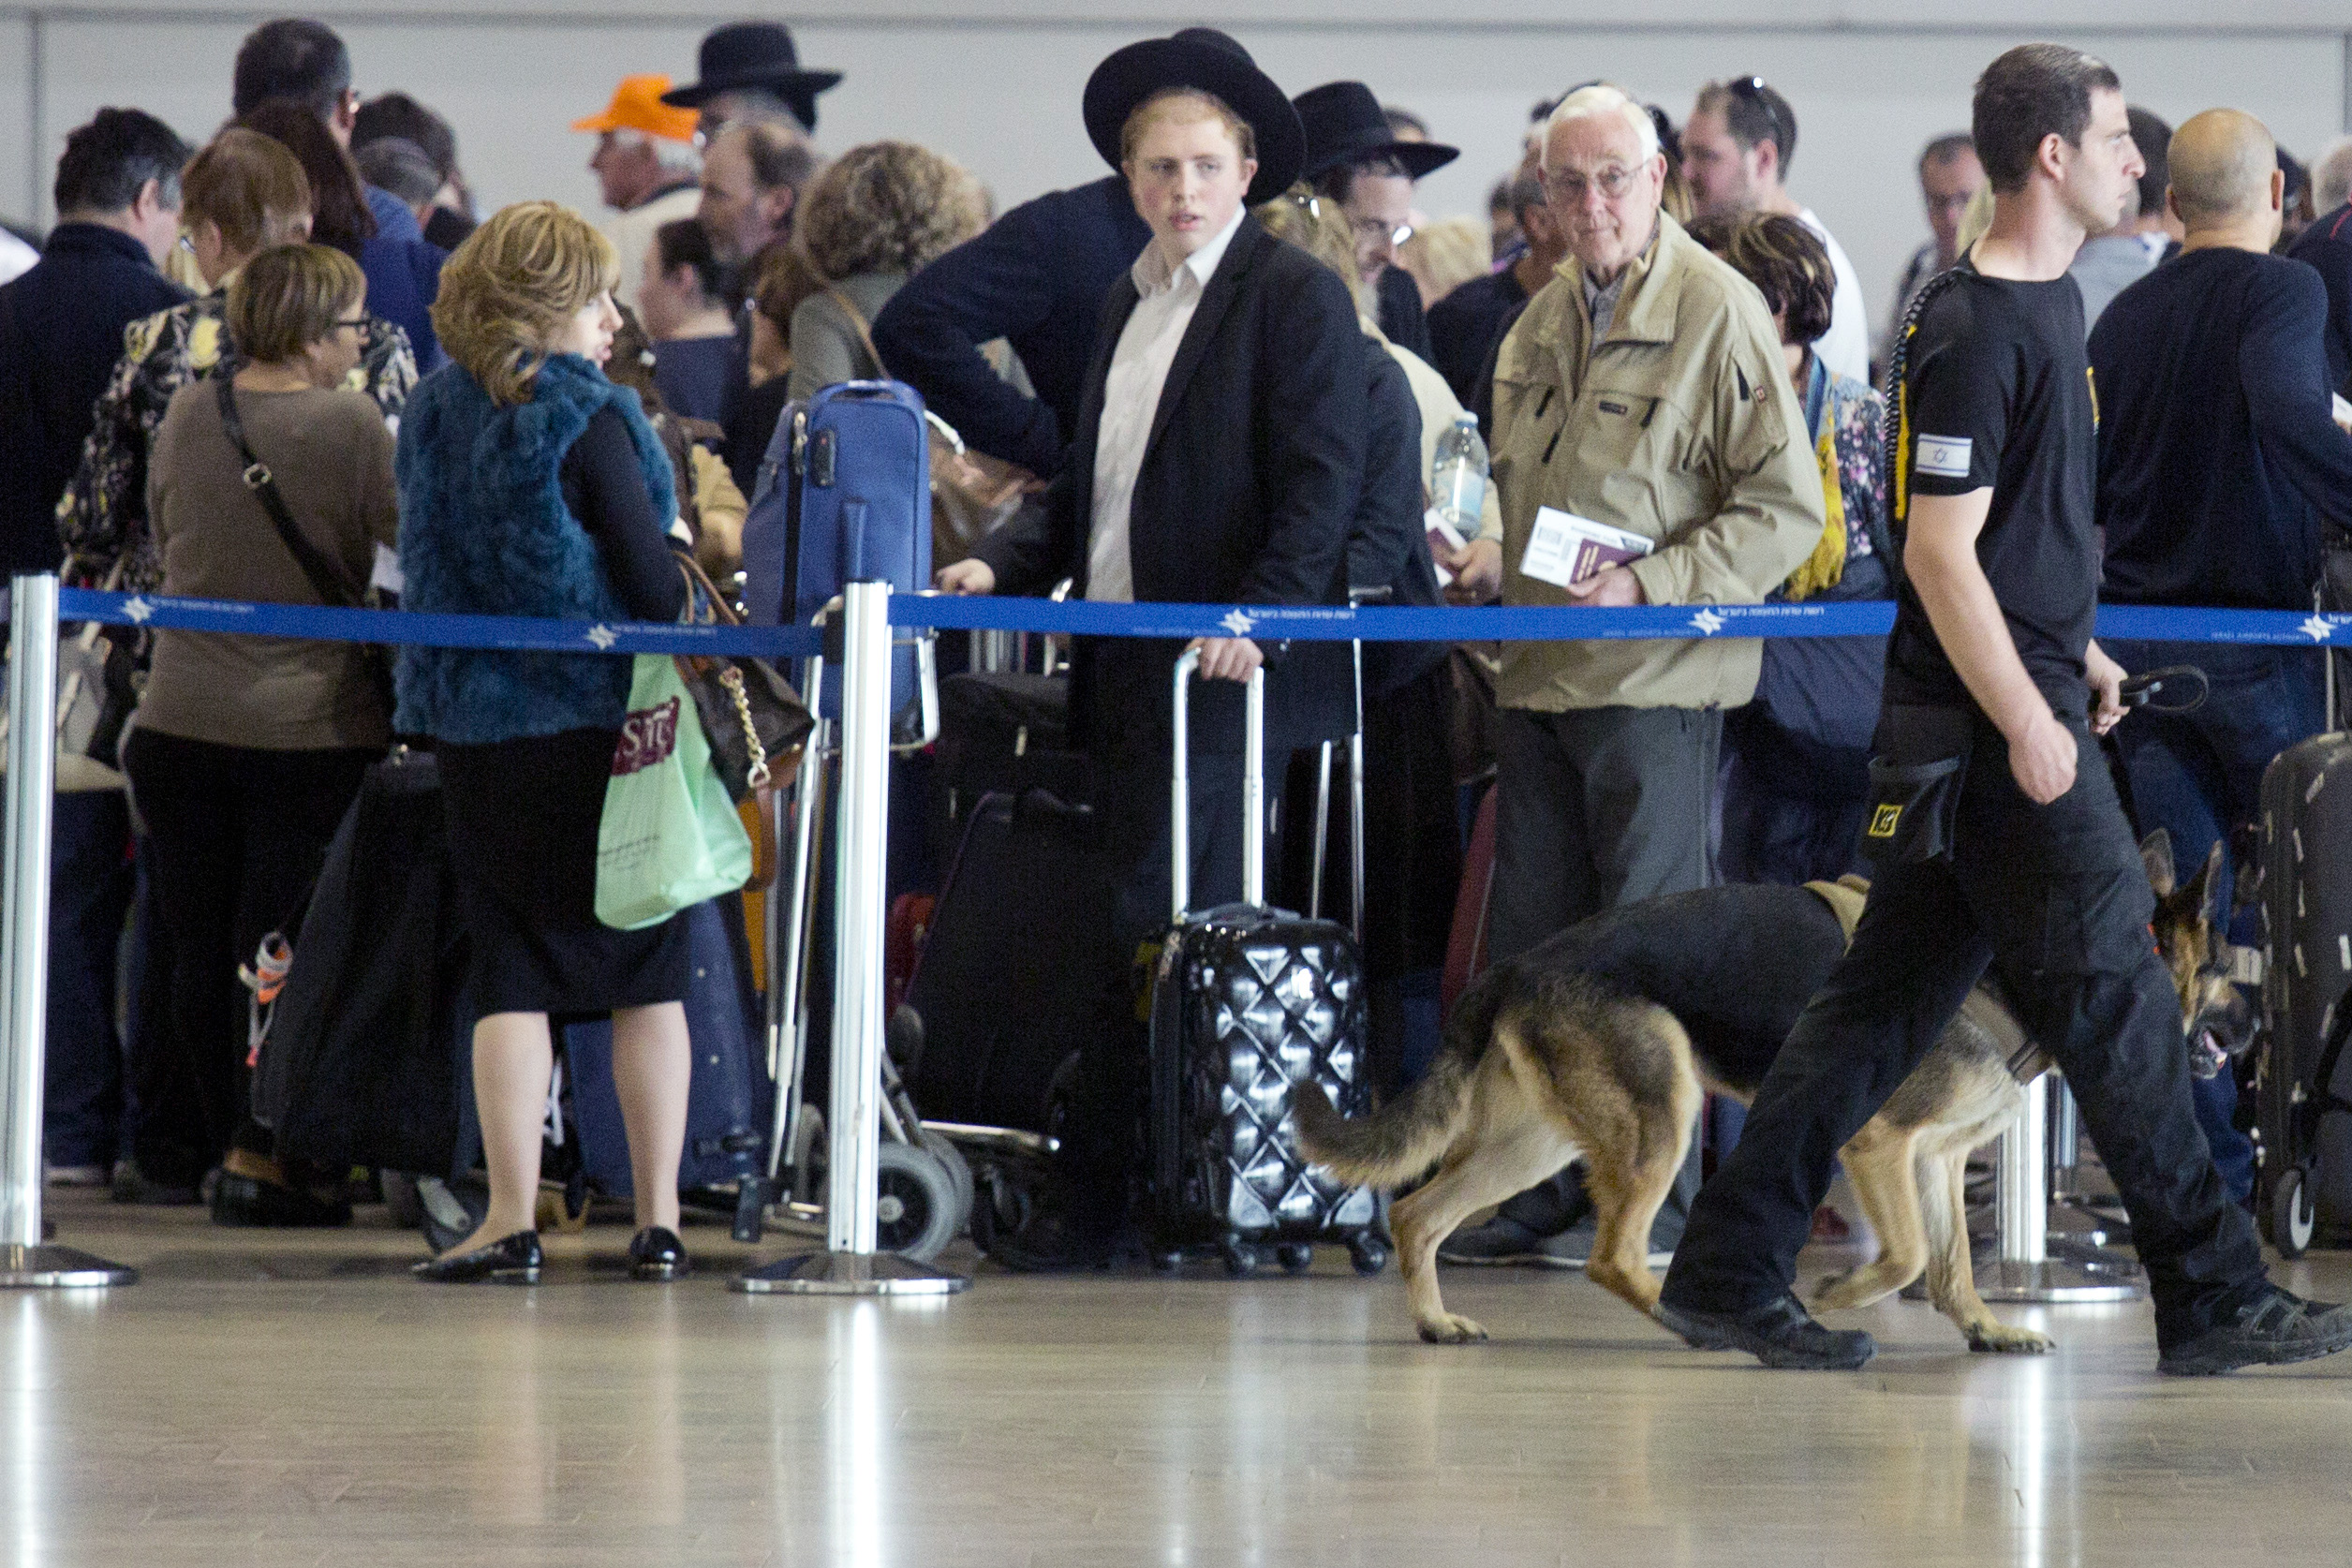 Προς απαγόρευση πτήσεων σε όλο το Ισραήλ – Κλείνει το αεροδρόμιο του Τελ Αβίβ